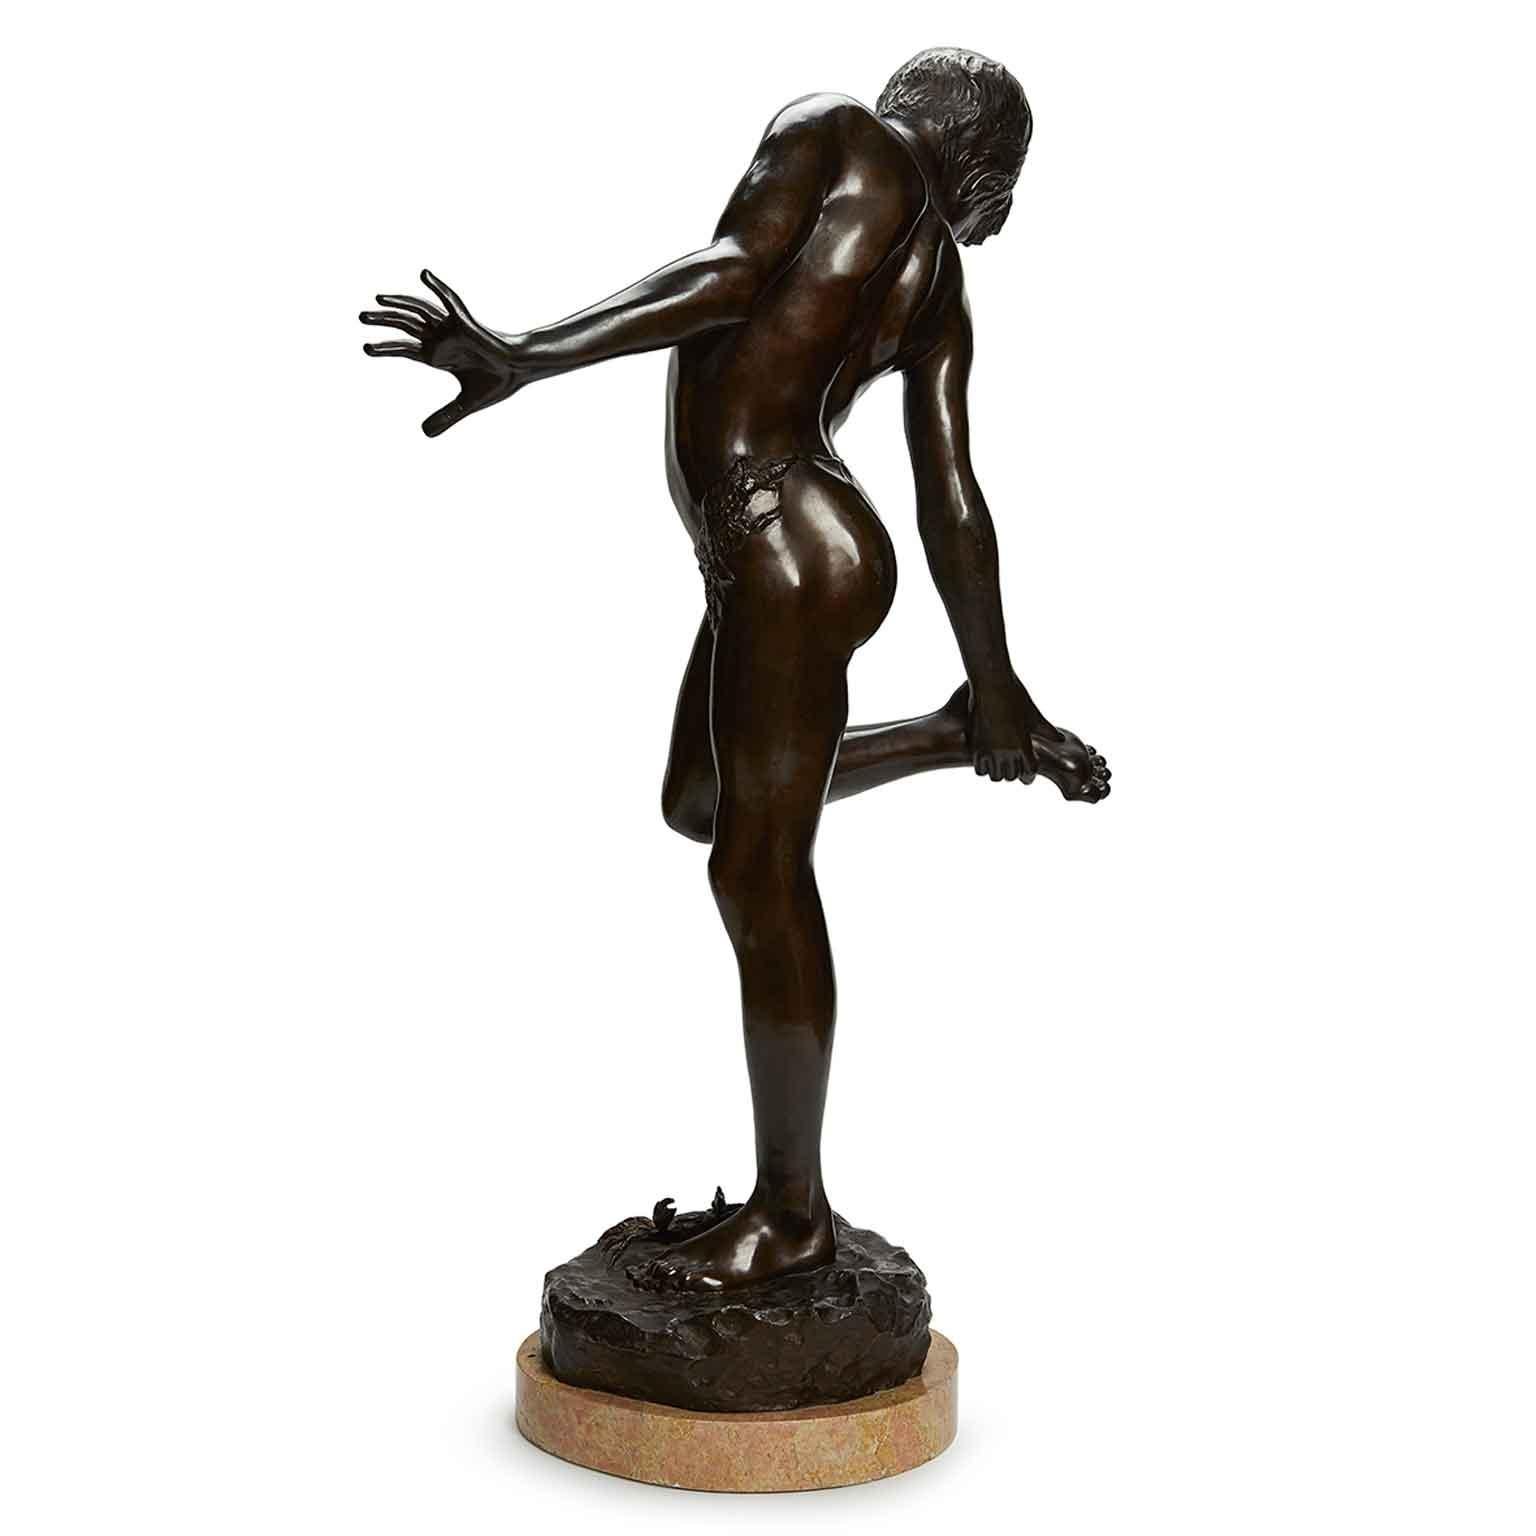 Annibale De Lotto Sculpture italienne en bronze représentant un jeune garçon à demi nu, un pêcheur debout se faisant mordre par un crabe sur son pied en tenant sa jambe droite, observant la morsure du crabe. 
Réalisée au début du XXe siècle, cette